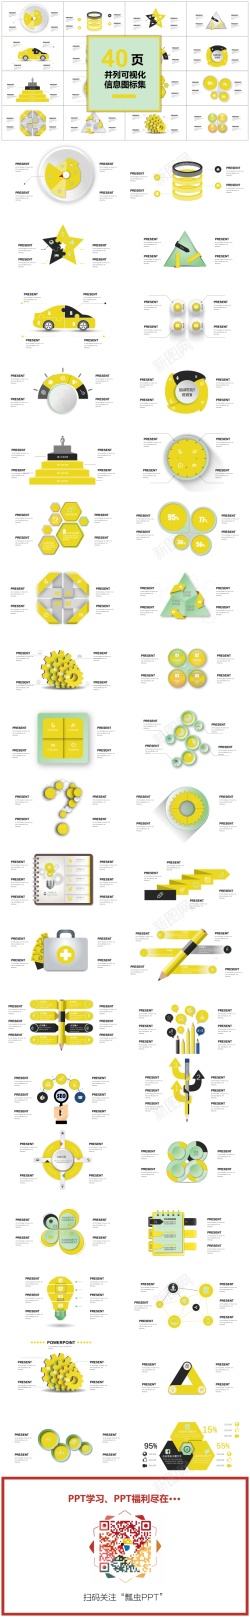 圆形图表00140页黄色并列可视化图表集PPT模板